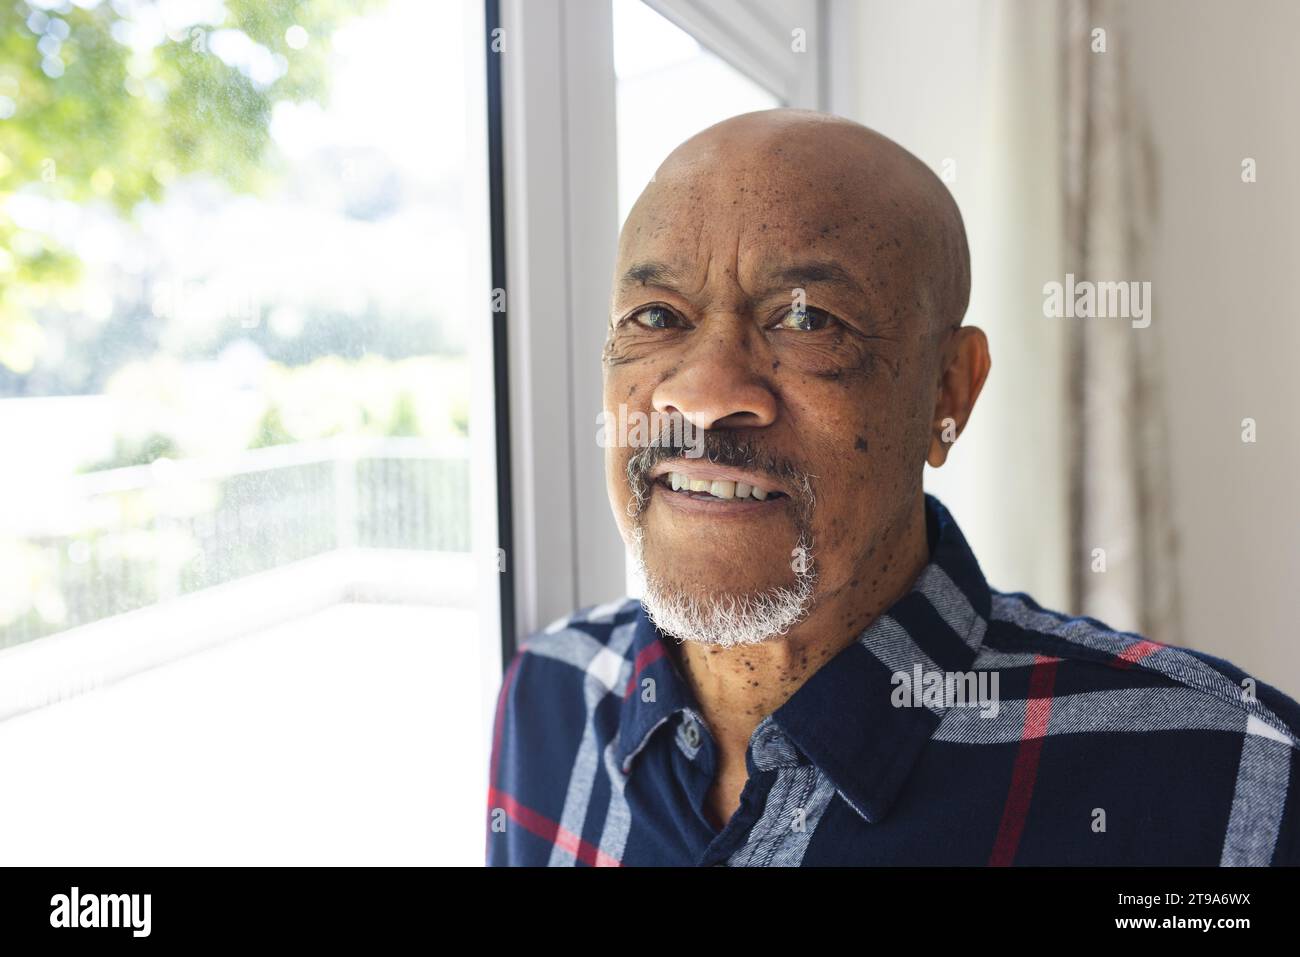 Porträt eines afroamerikaners, der zu Hause aus dem Fenster schaut. Lebensstil, Ruhestand, Seniorenleben und Hausleben, unverändert. Stockfoto